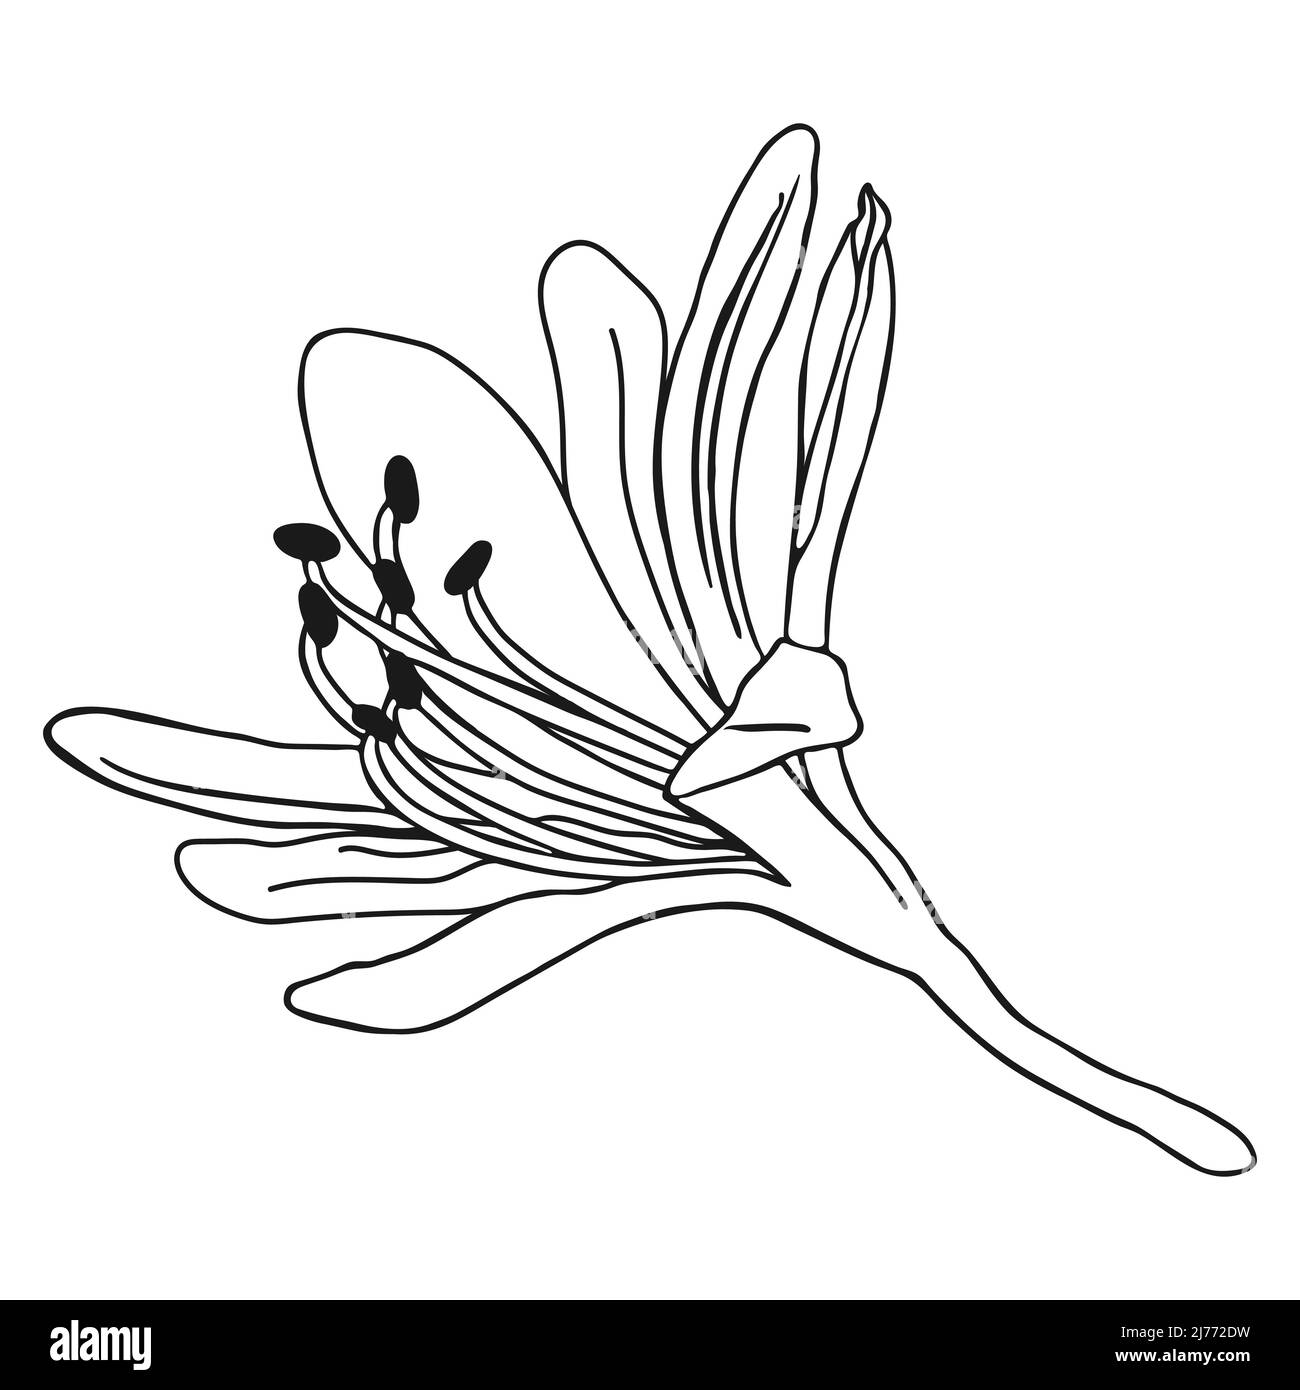 Magnifique croquis de fleurs de nénuphars. Dessin de lys de Doodle. Dessin simple à la main d'une fleur. Contour noir. Illustration vectorielle. Illustration de Vecteur